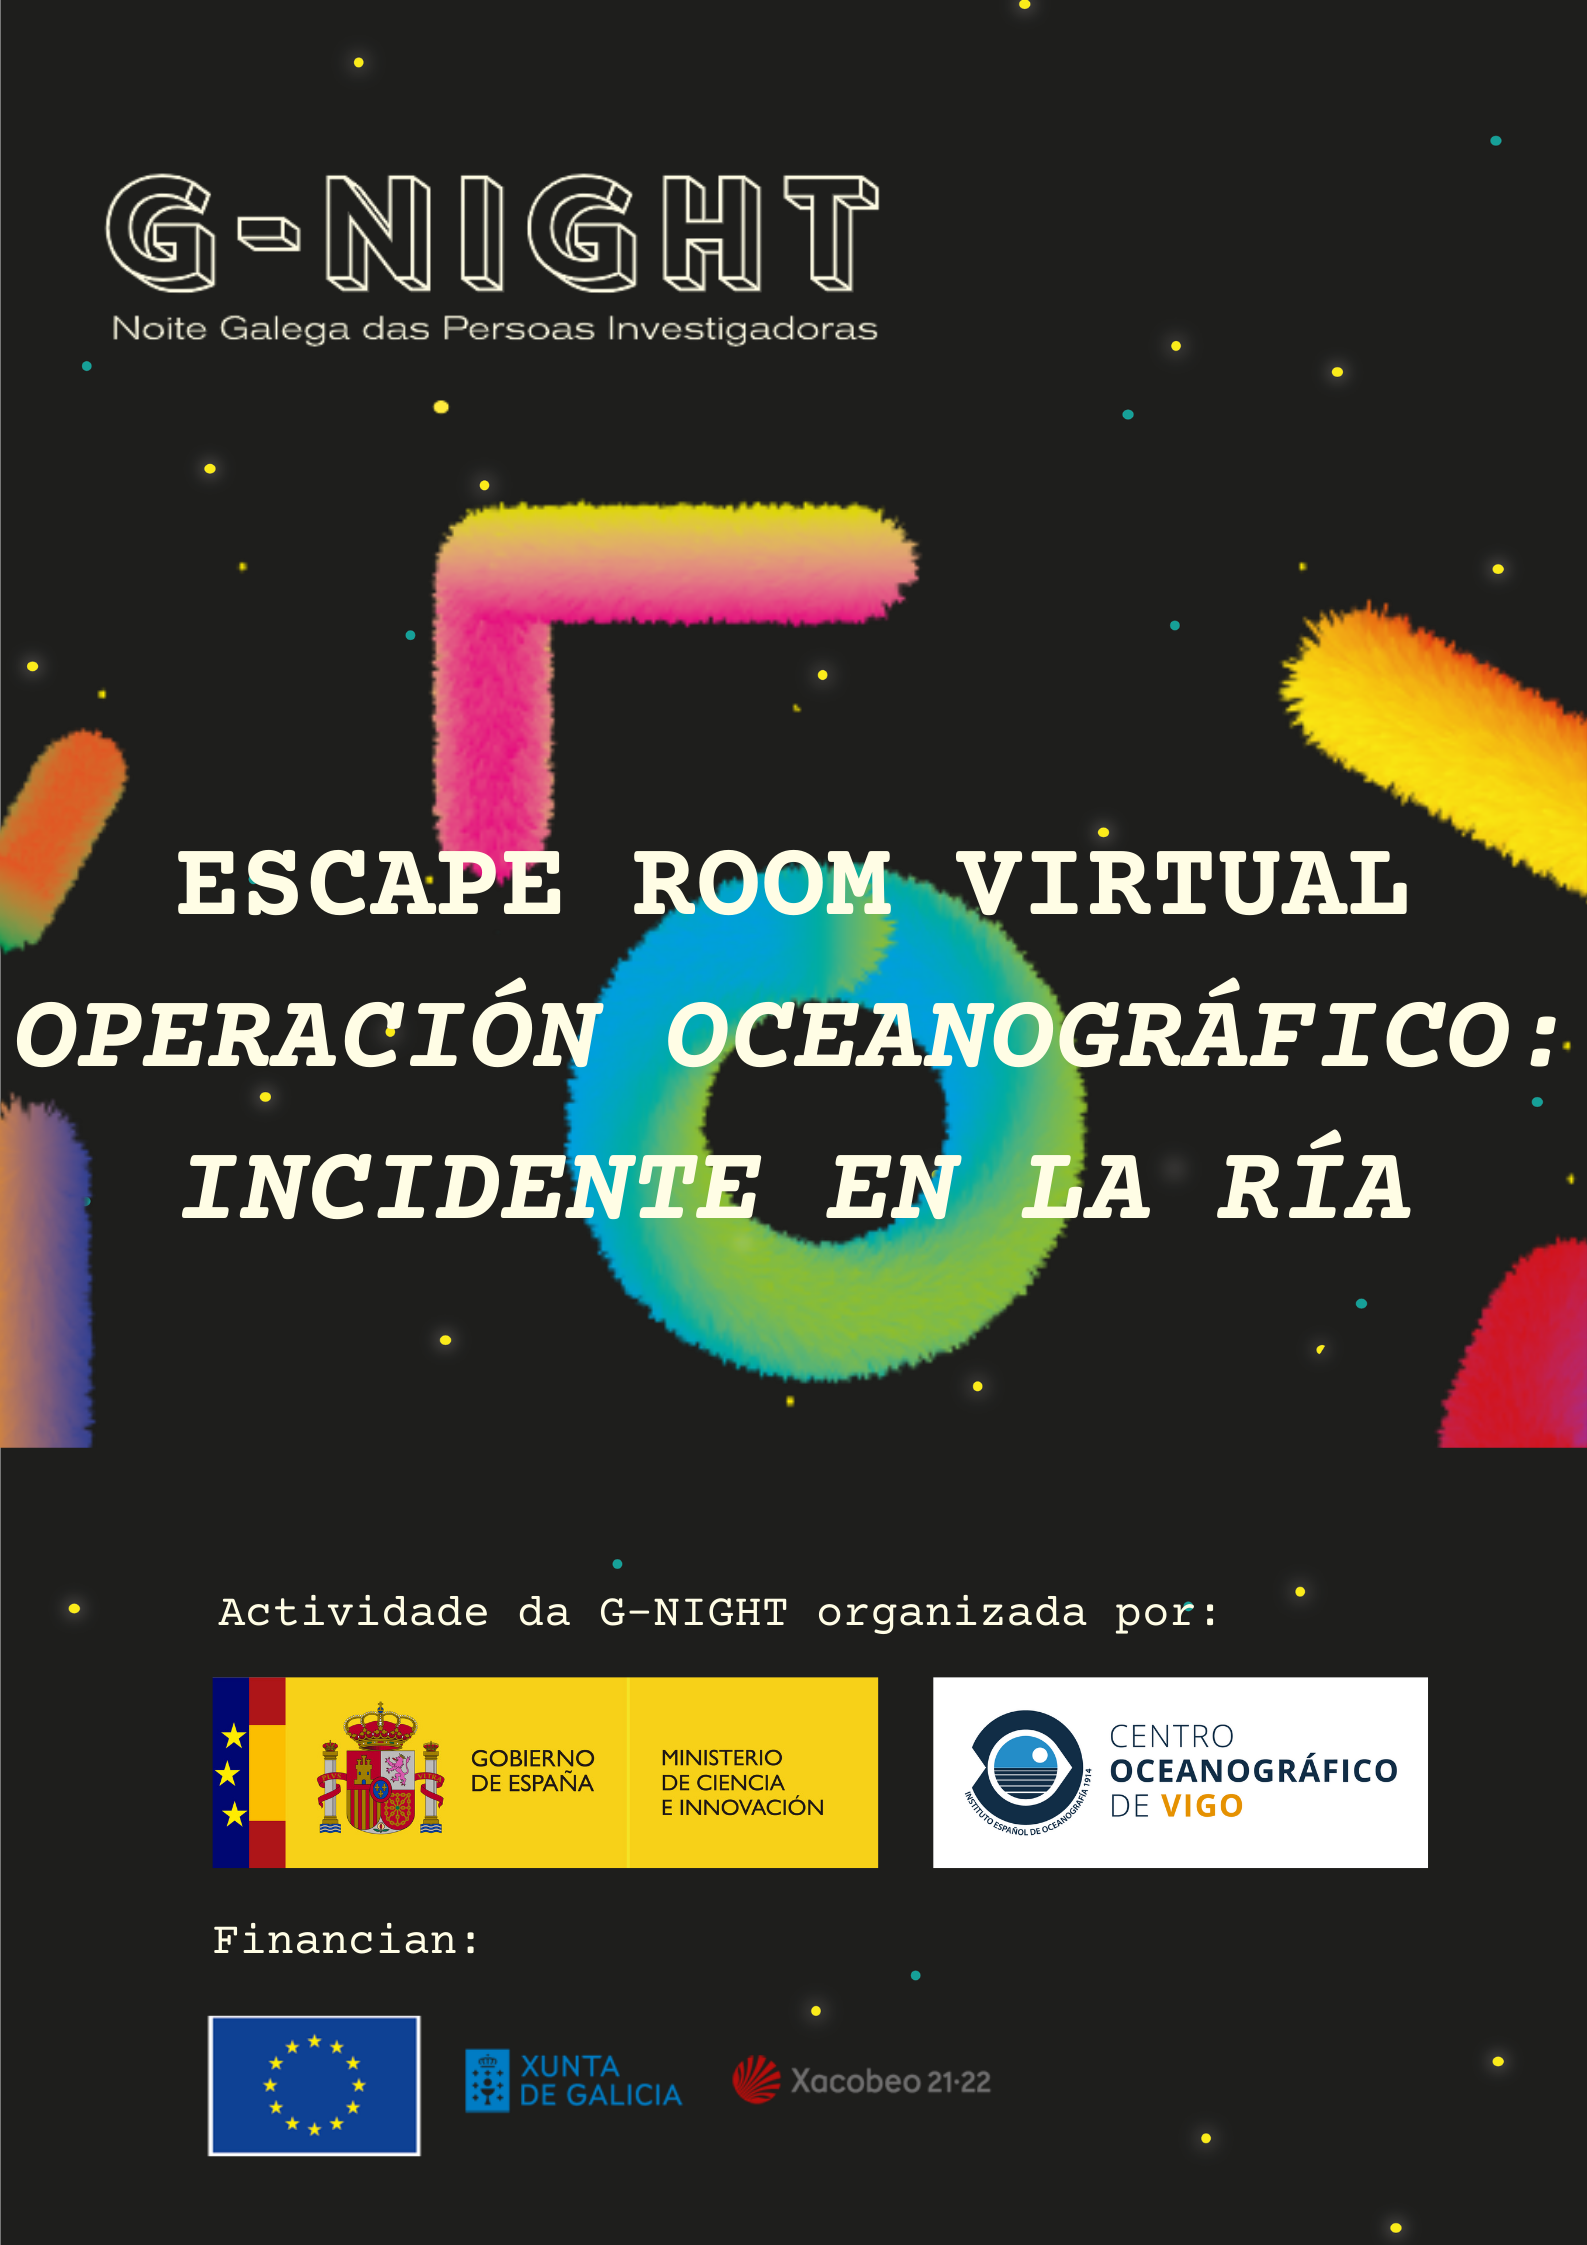 Escape Room - Operacion Oceanografico